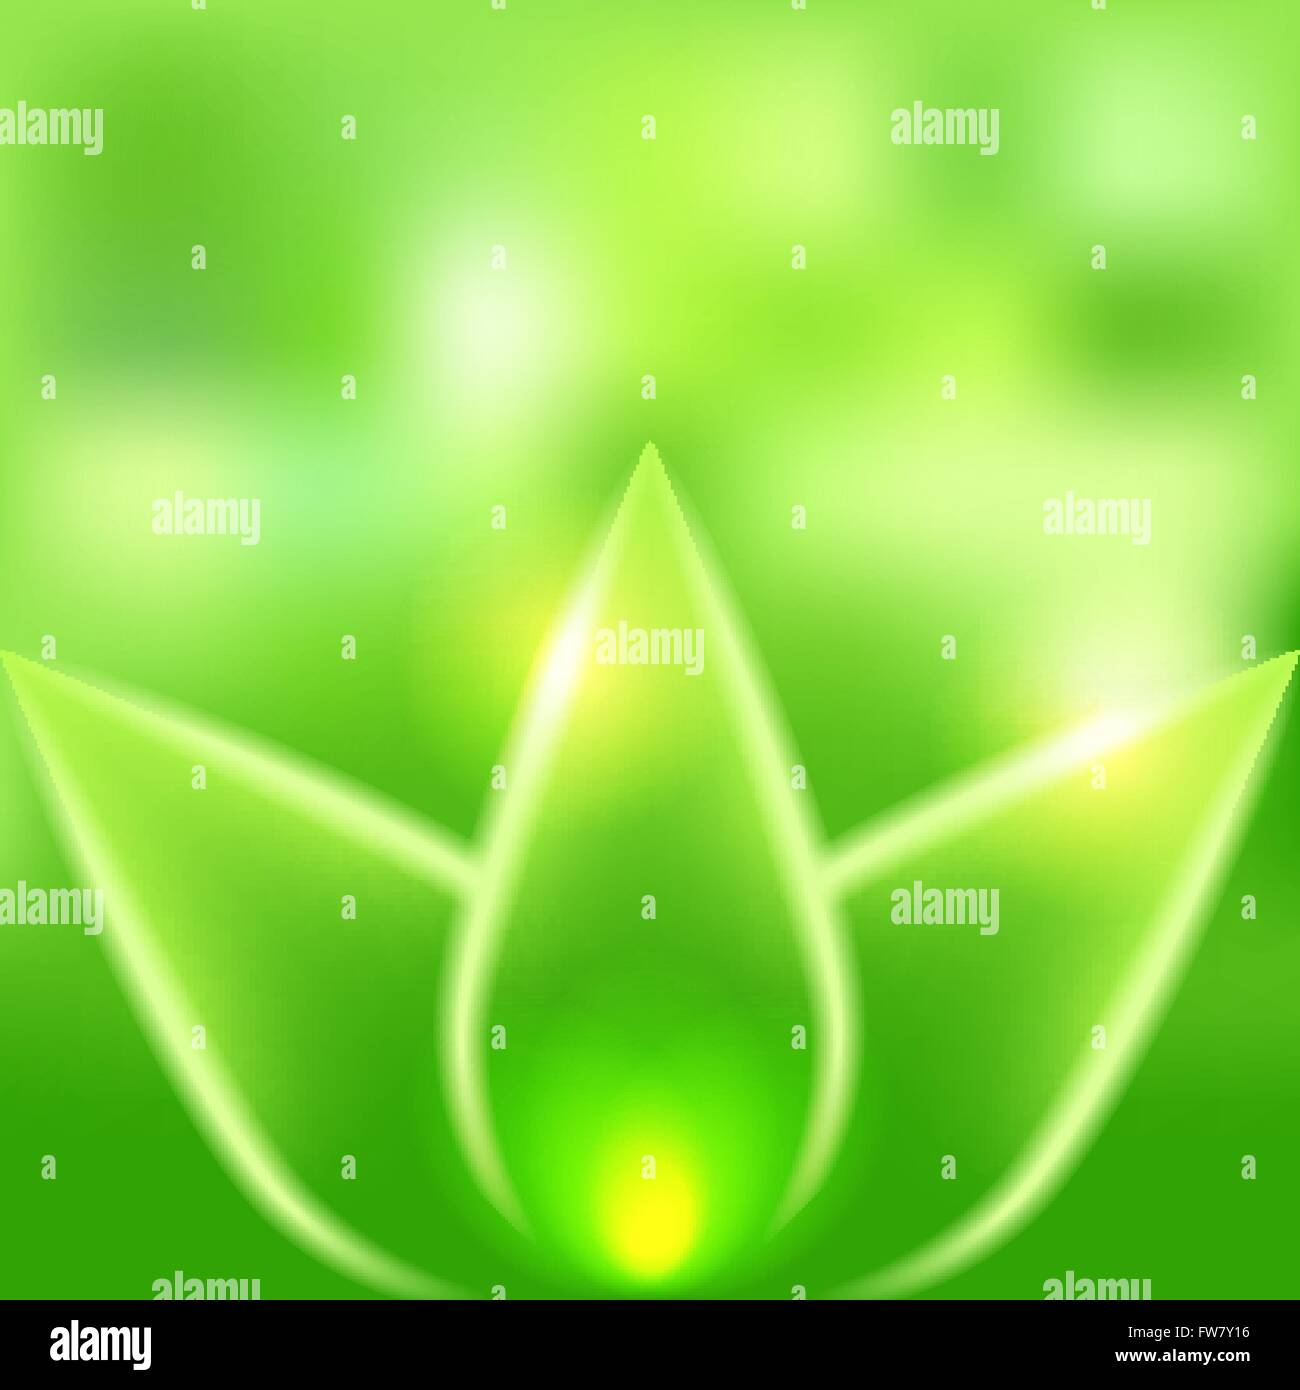 Les feuilles vertes fond flou - vector illustration EPS 10. Illustration de Vecteur